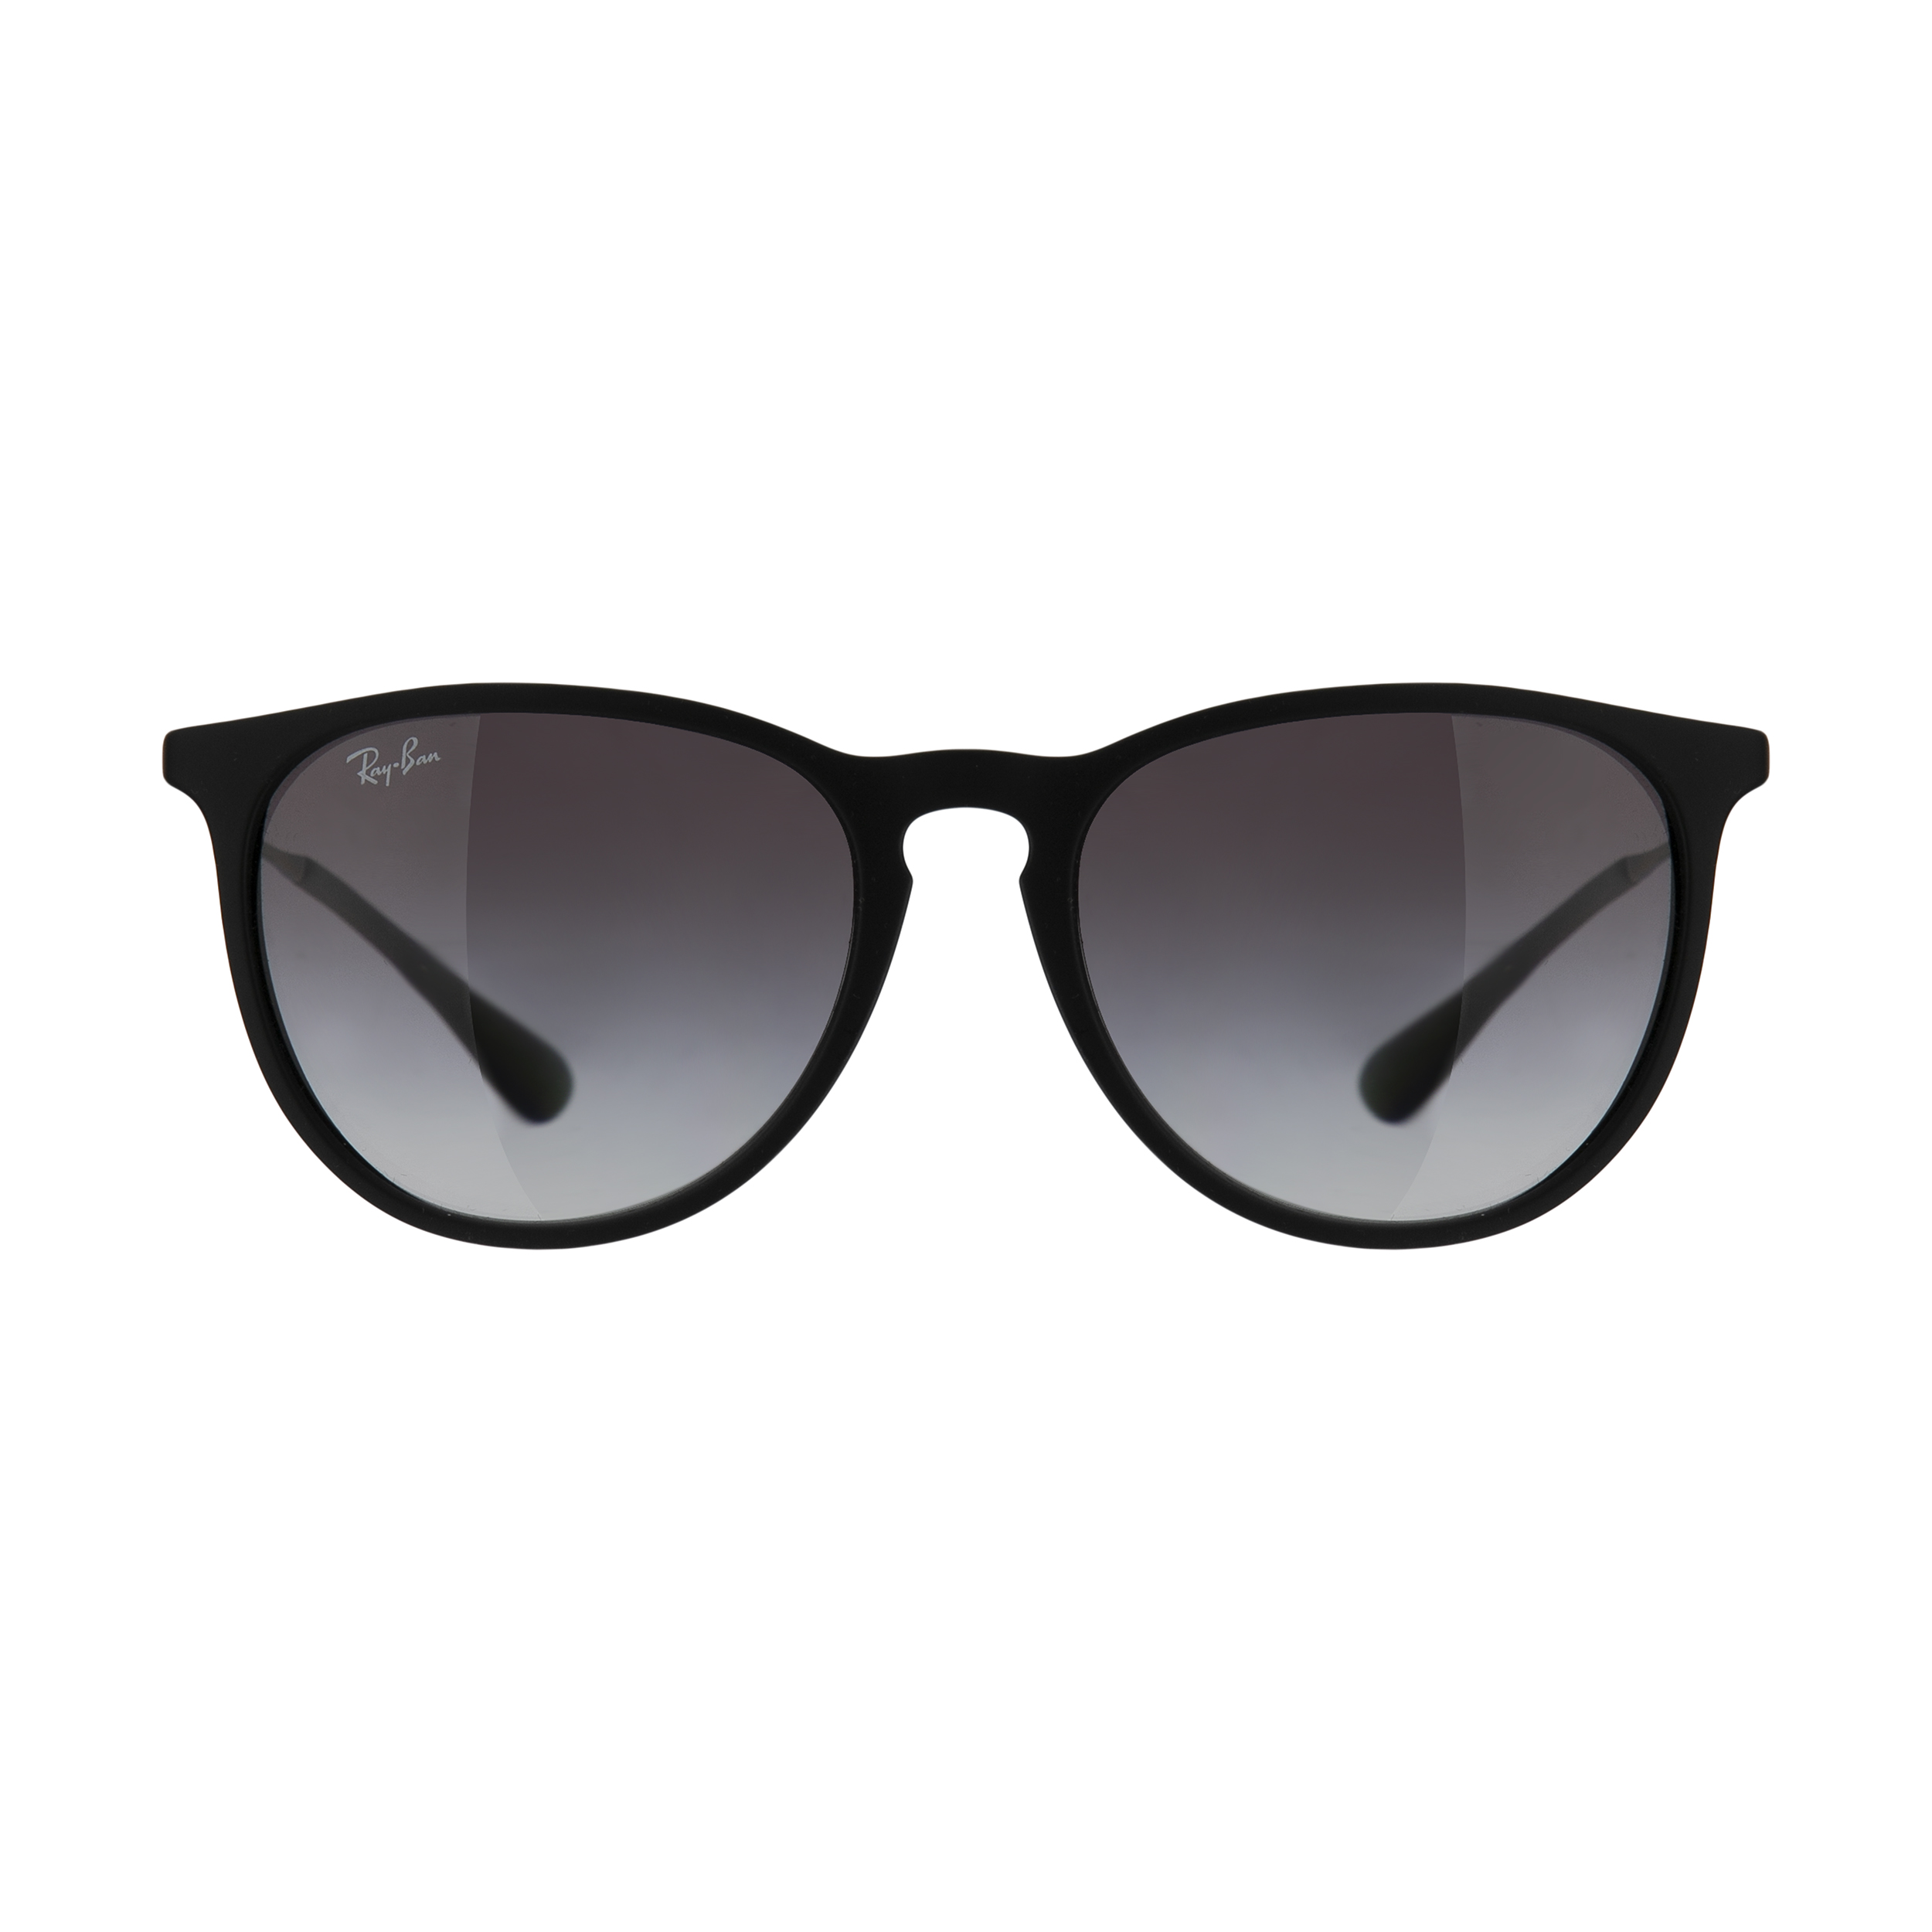 عینک آفتابی ری بن مدل RB4171S 06228G 54 -  - 1